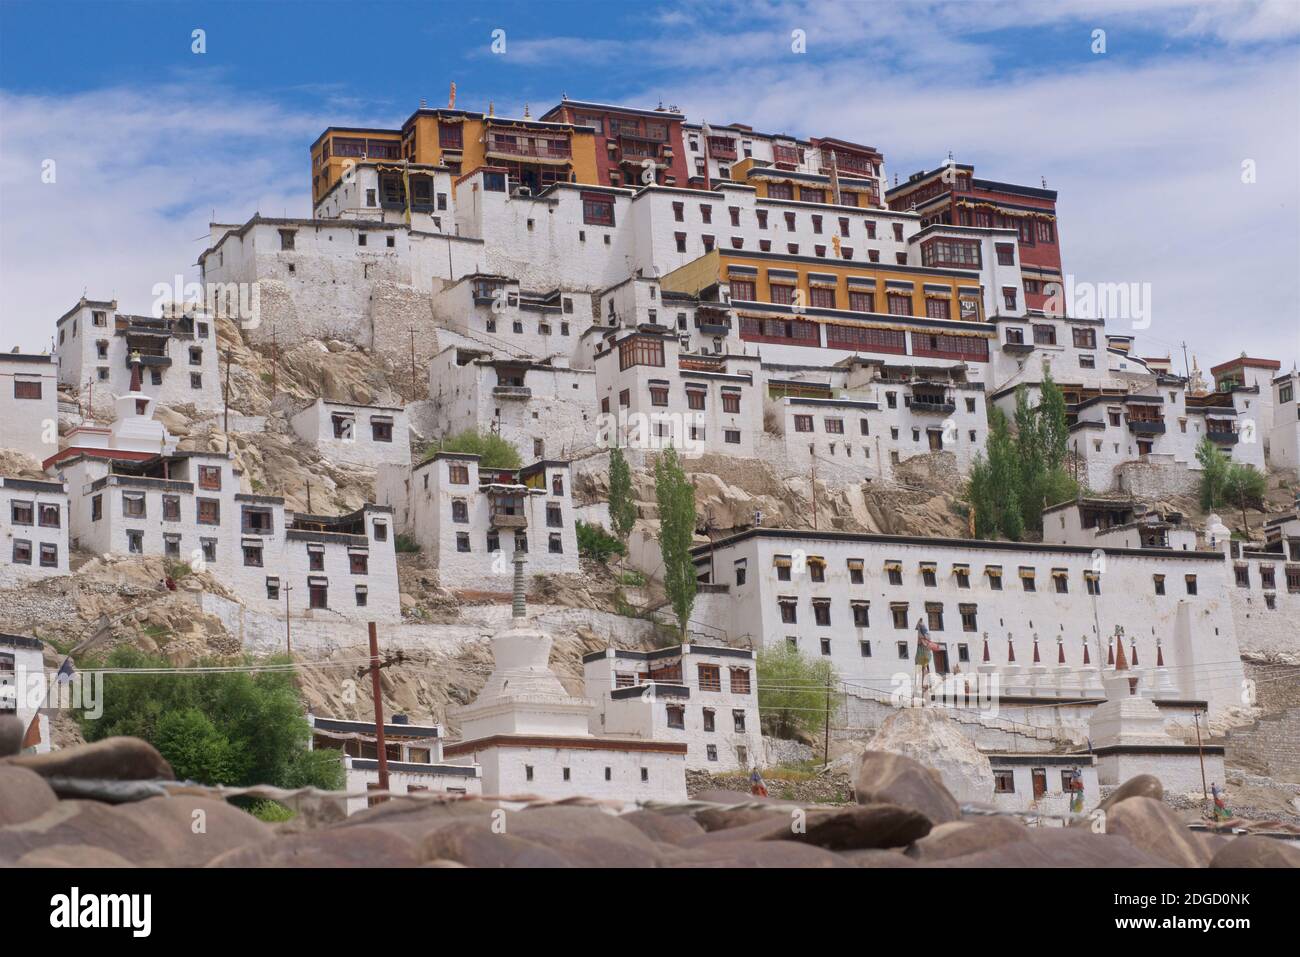 Thikse Gompa (monastero) domina il paesaggio circostante. Ladakh, Jammu e Kashmir, India settentrionale Foto Stock